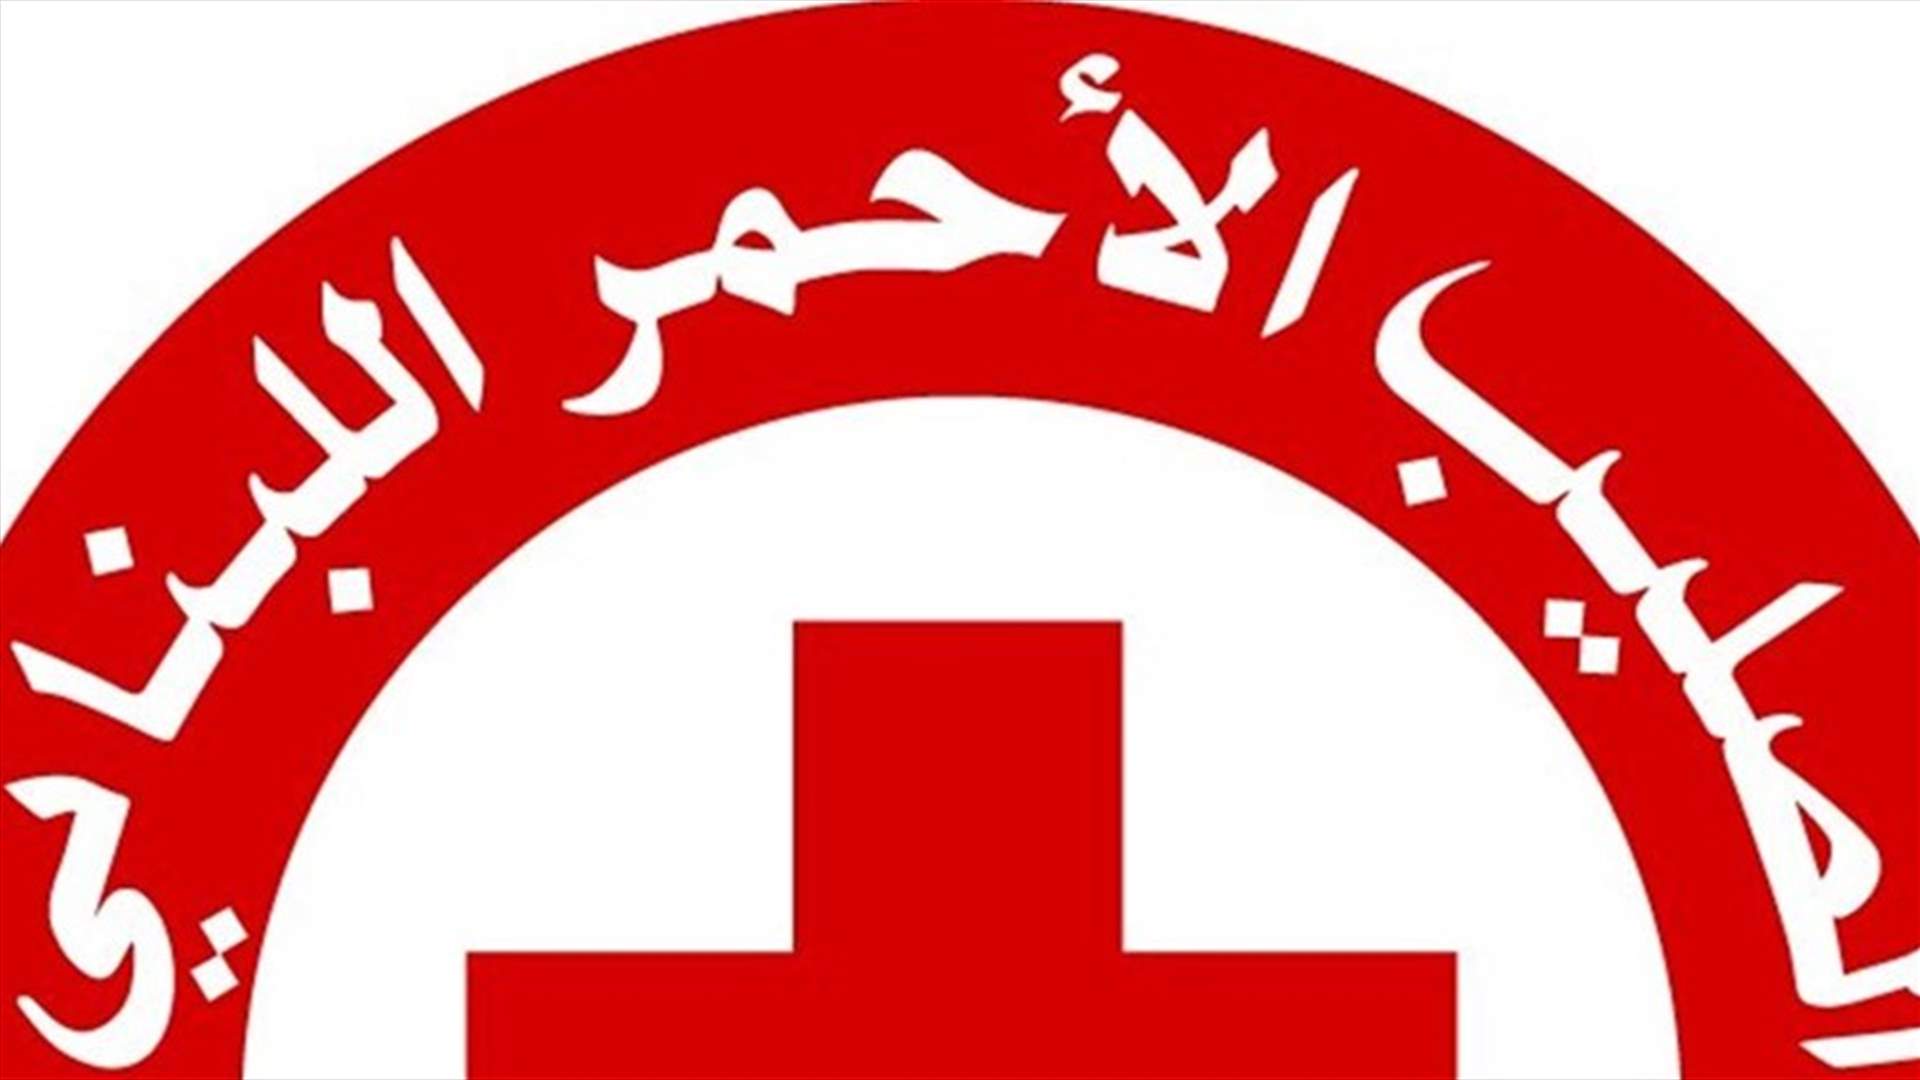 الصليب الأحمر: ليس لنا أي دور رقابي أو تنظيمي أو عملاني في حملة التلقيح الوطنية